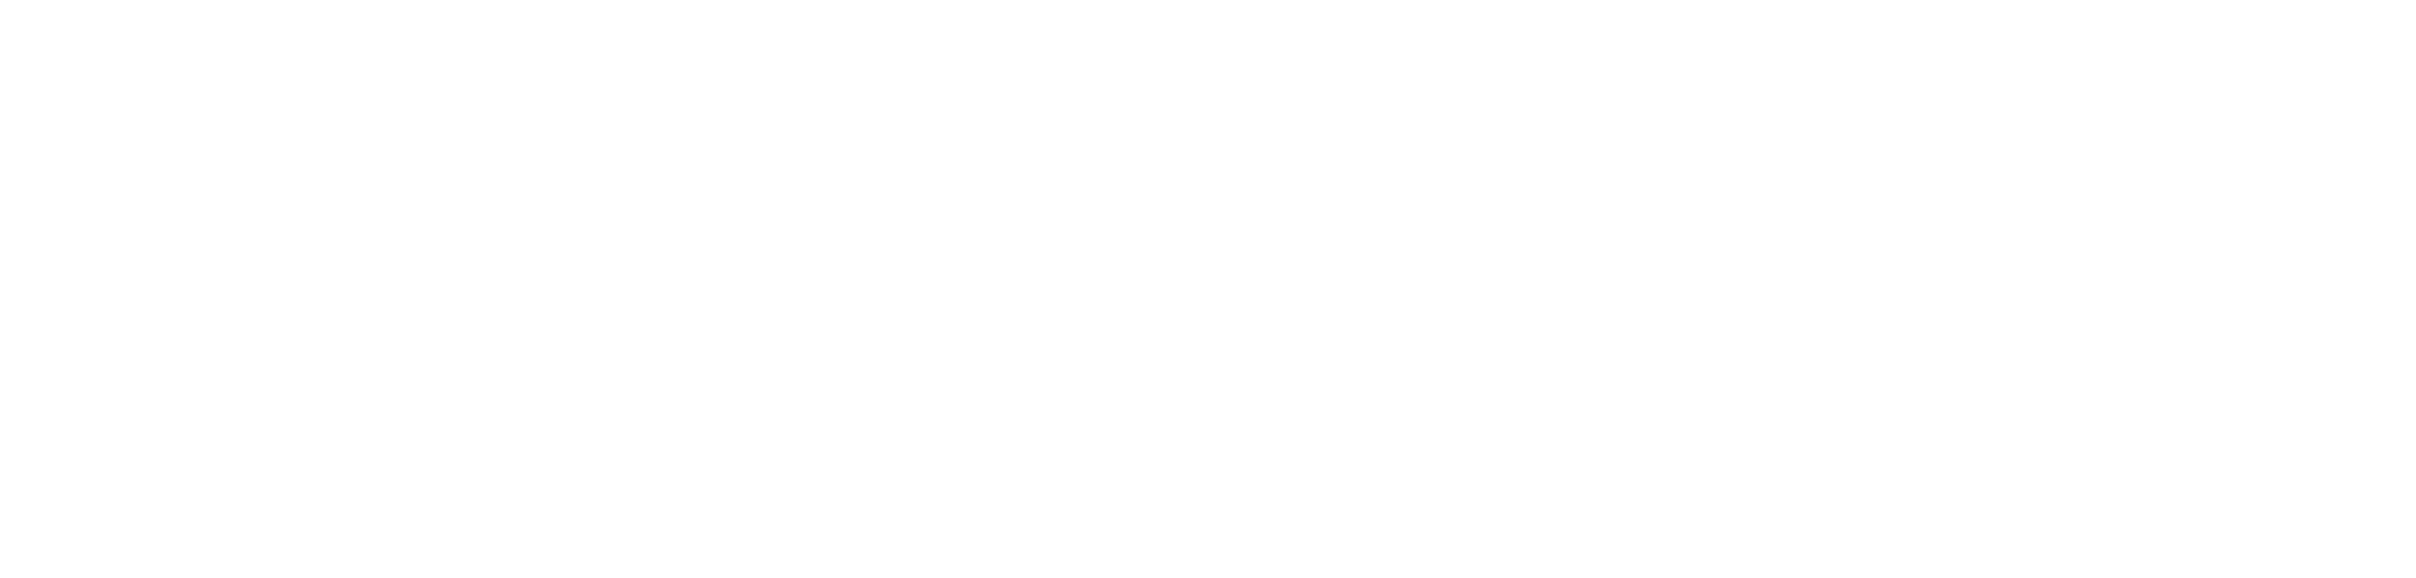 Fly Girls : les voix féminines du hip-hop en Suisse